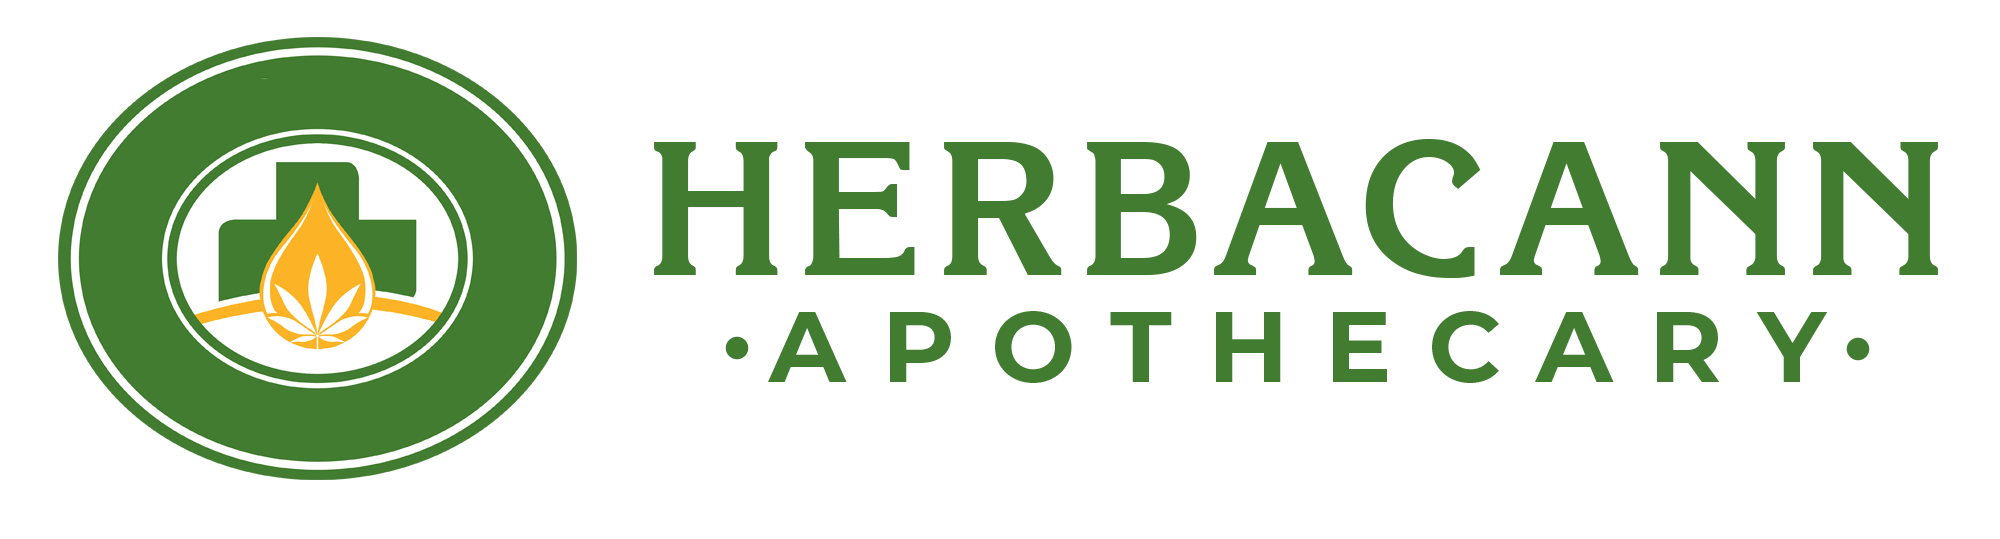 Logo-Herbacann-Apothecary